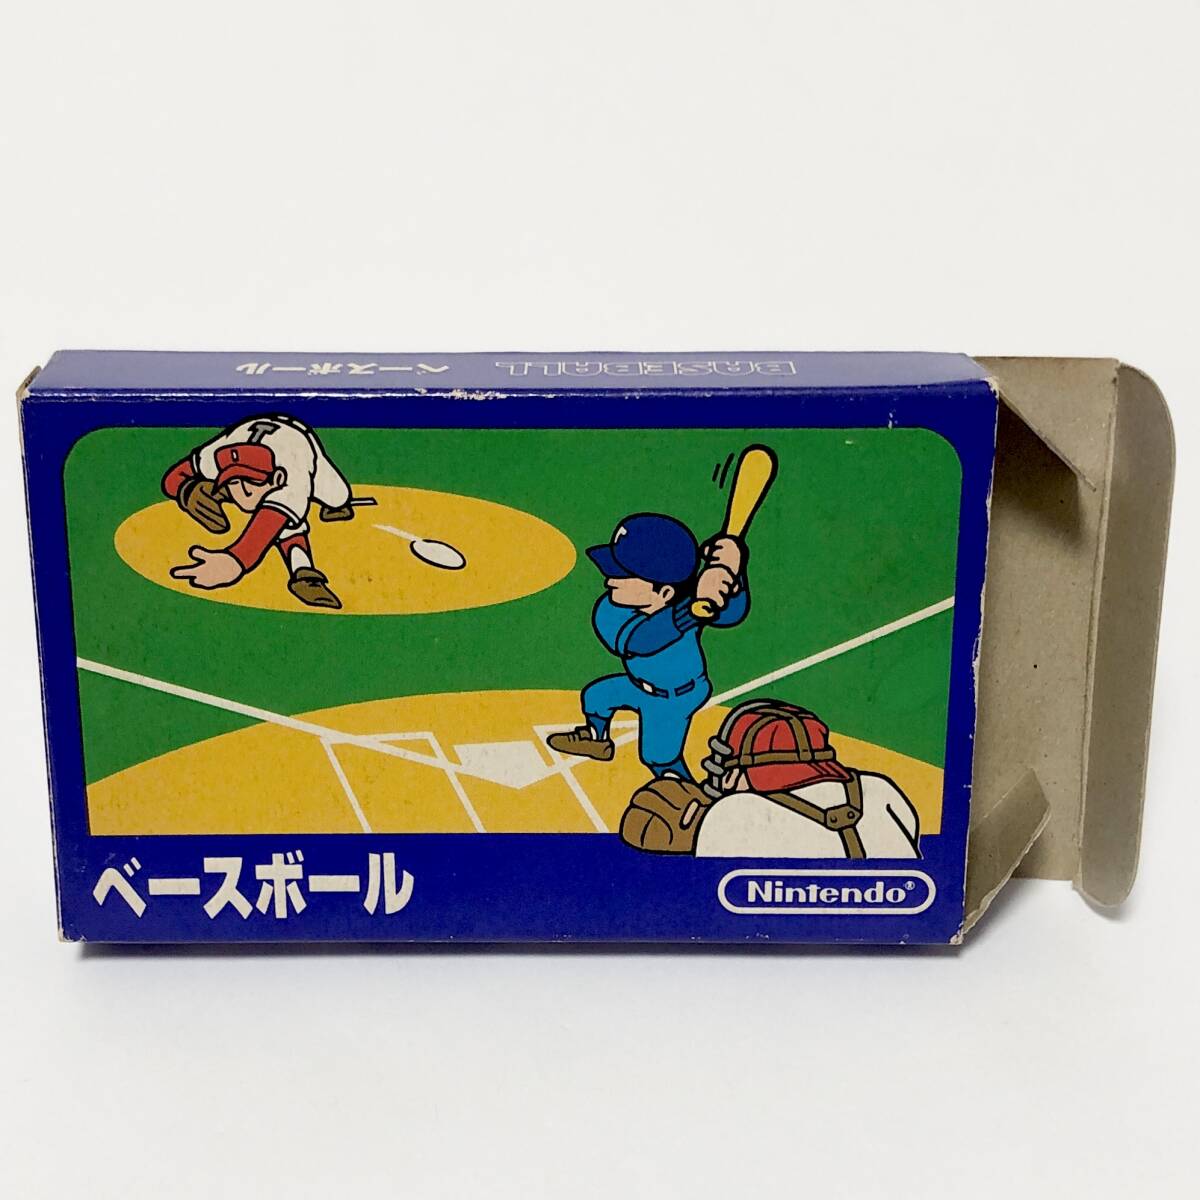 ファミコン ベースボール 小箱版 箱説付き 痛みあり 操作法早見図付き Nintendo Famicom Baseball Small Box Version CIB Tested_画像2